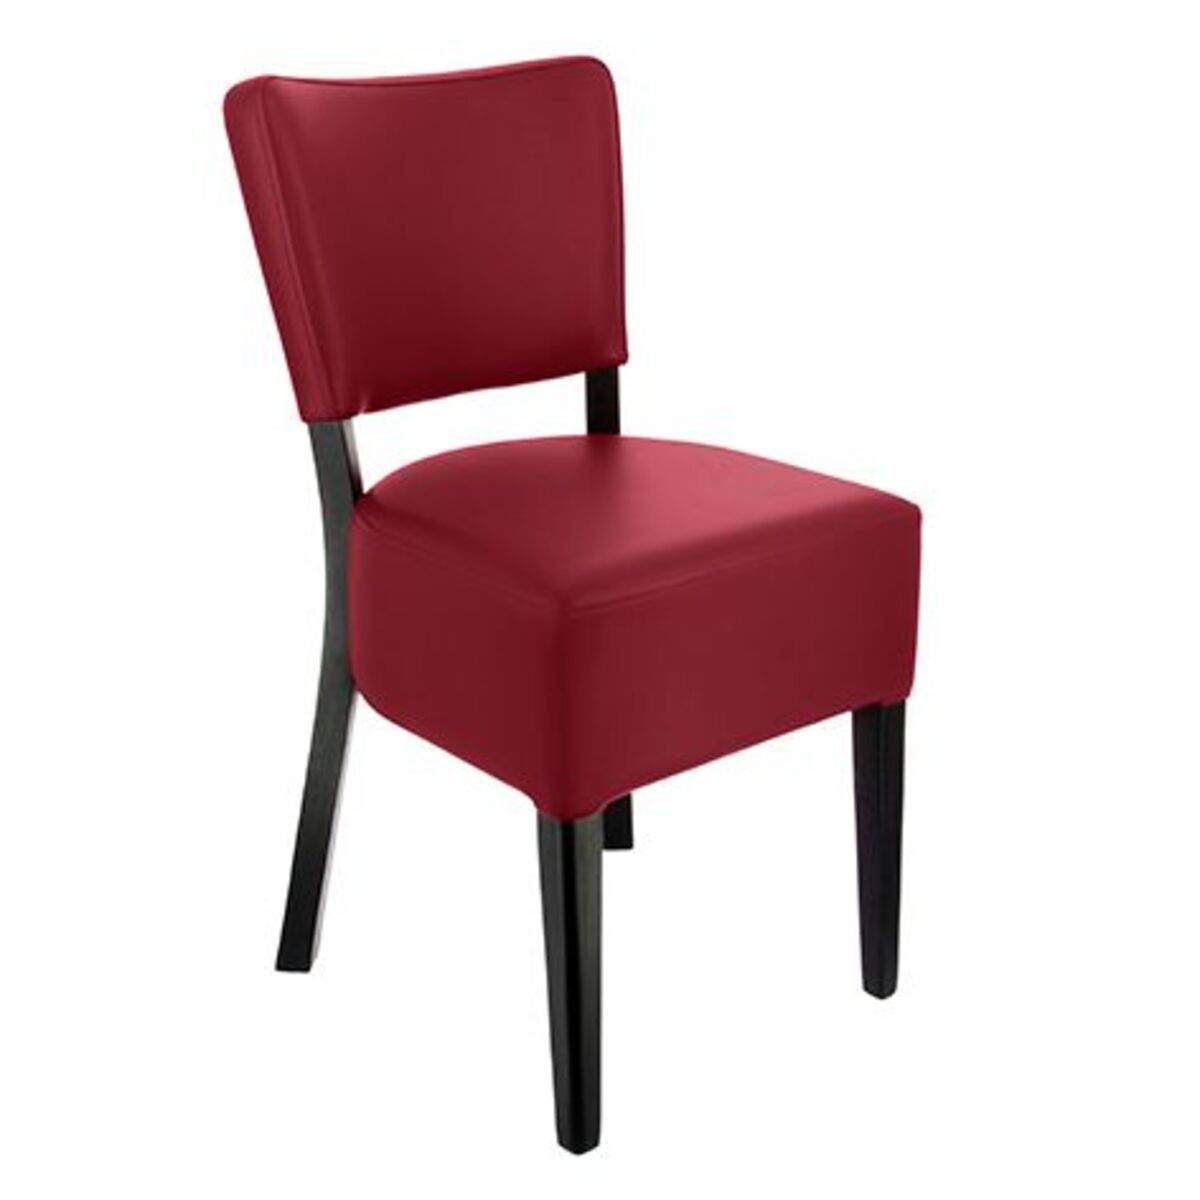 Chaise bois amsterdam coloris rouge assise épaisse - par 2